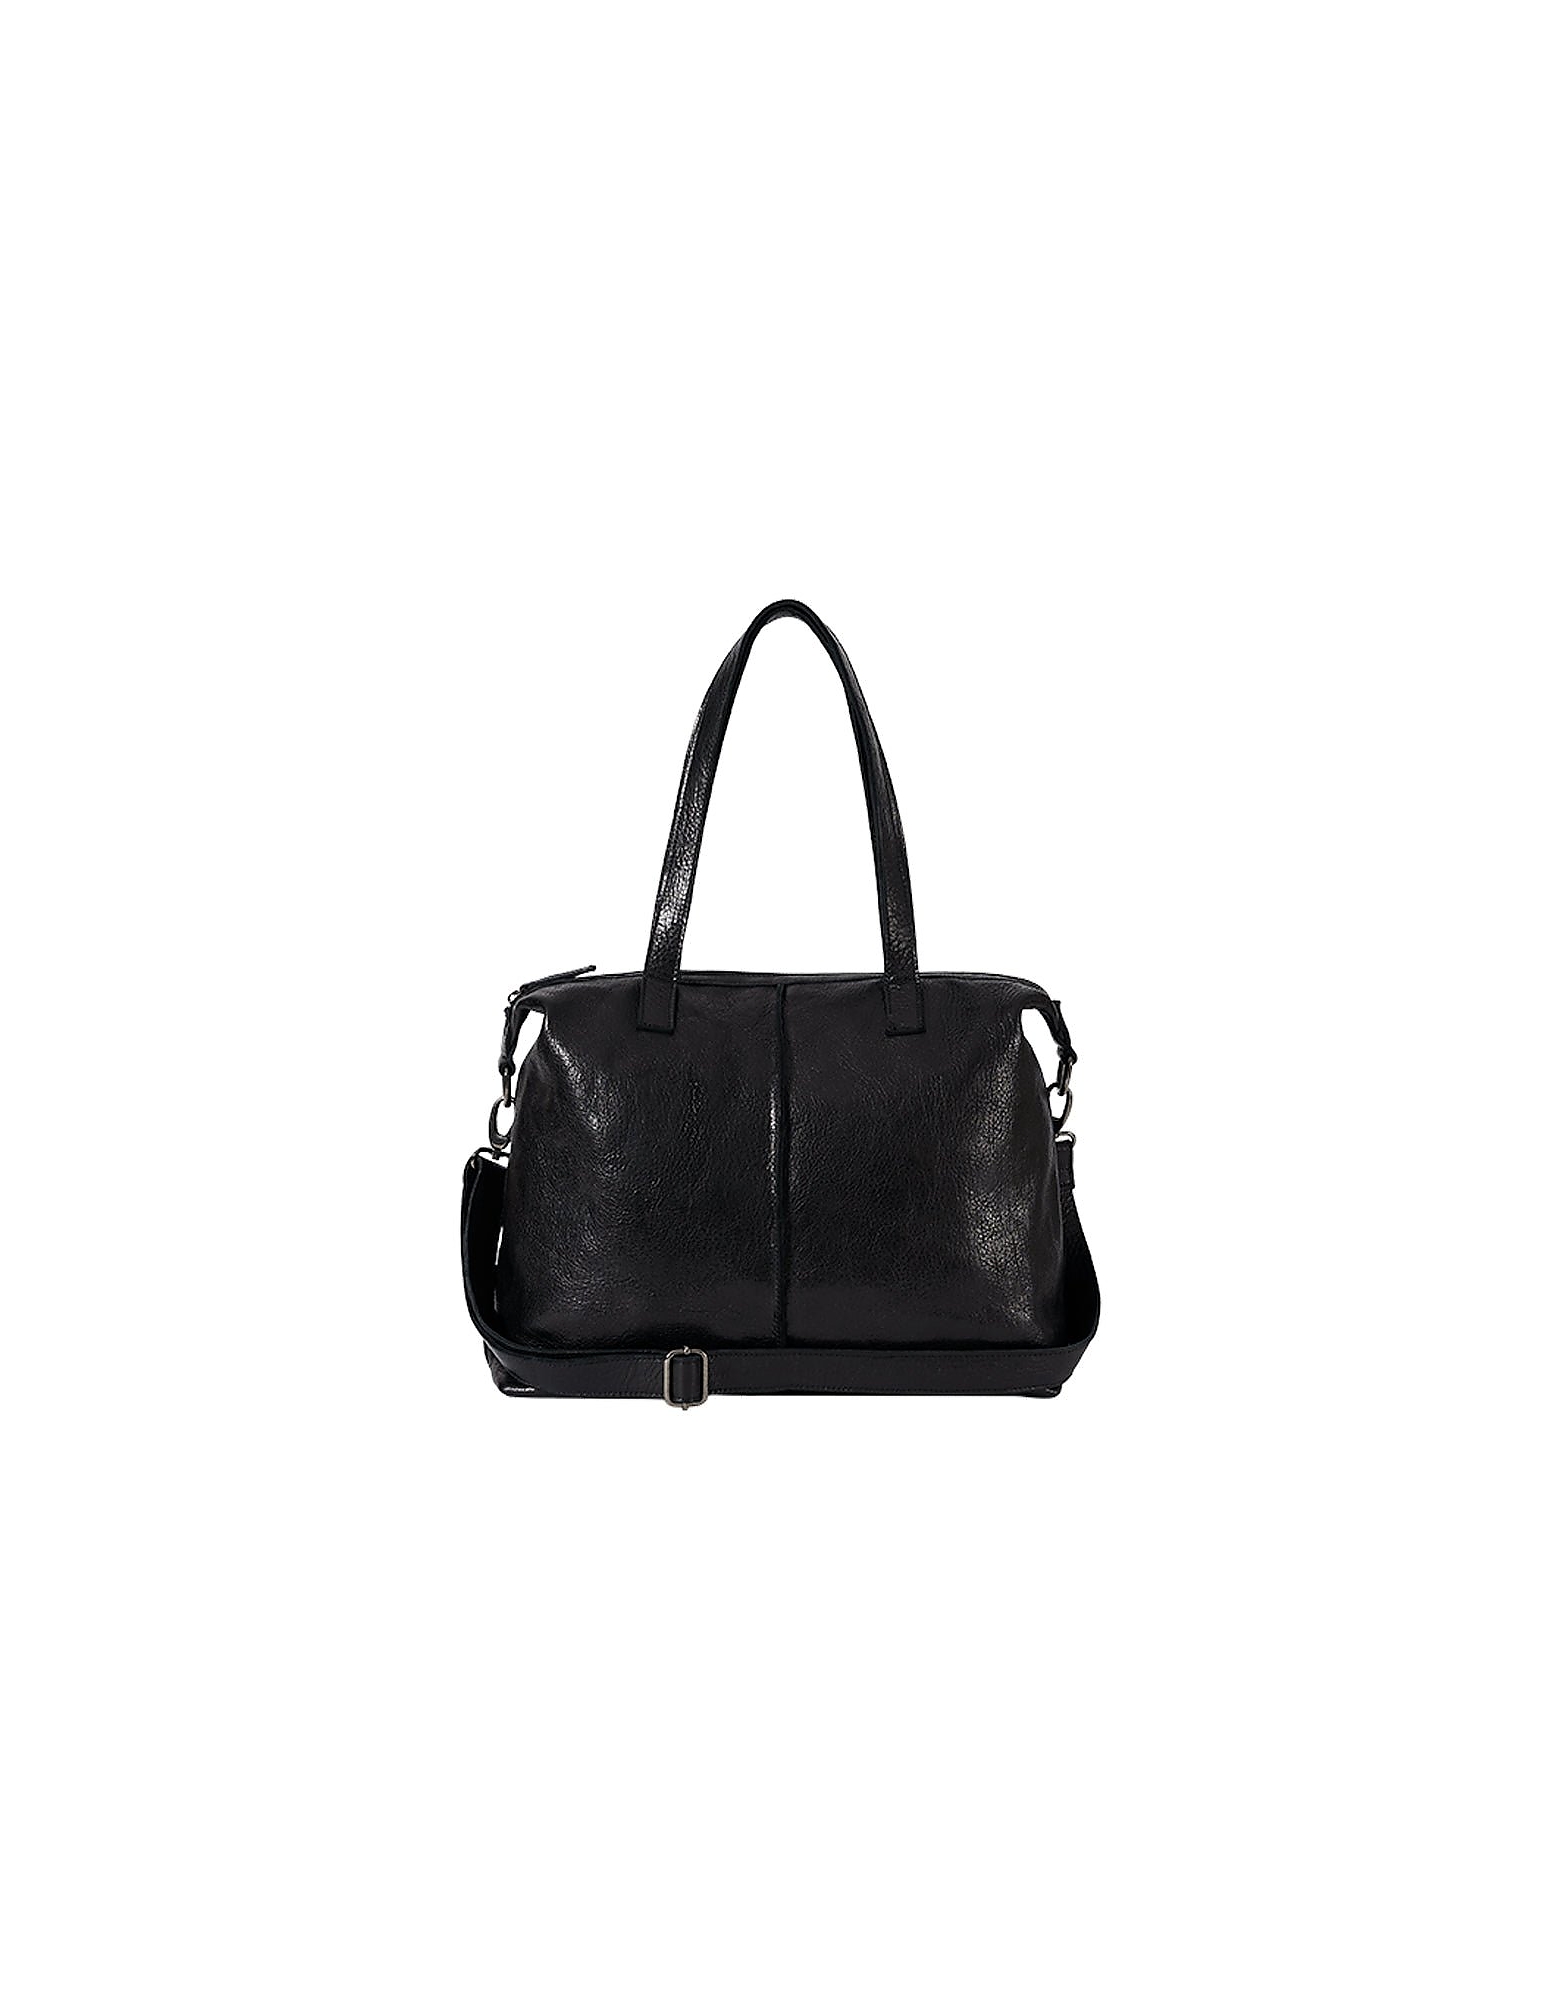 Brussosa Designer Handbags Karol Bag - Shoulder Bag In Noir